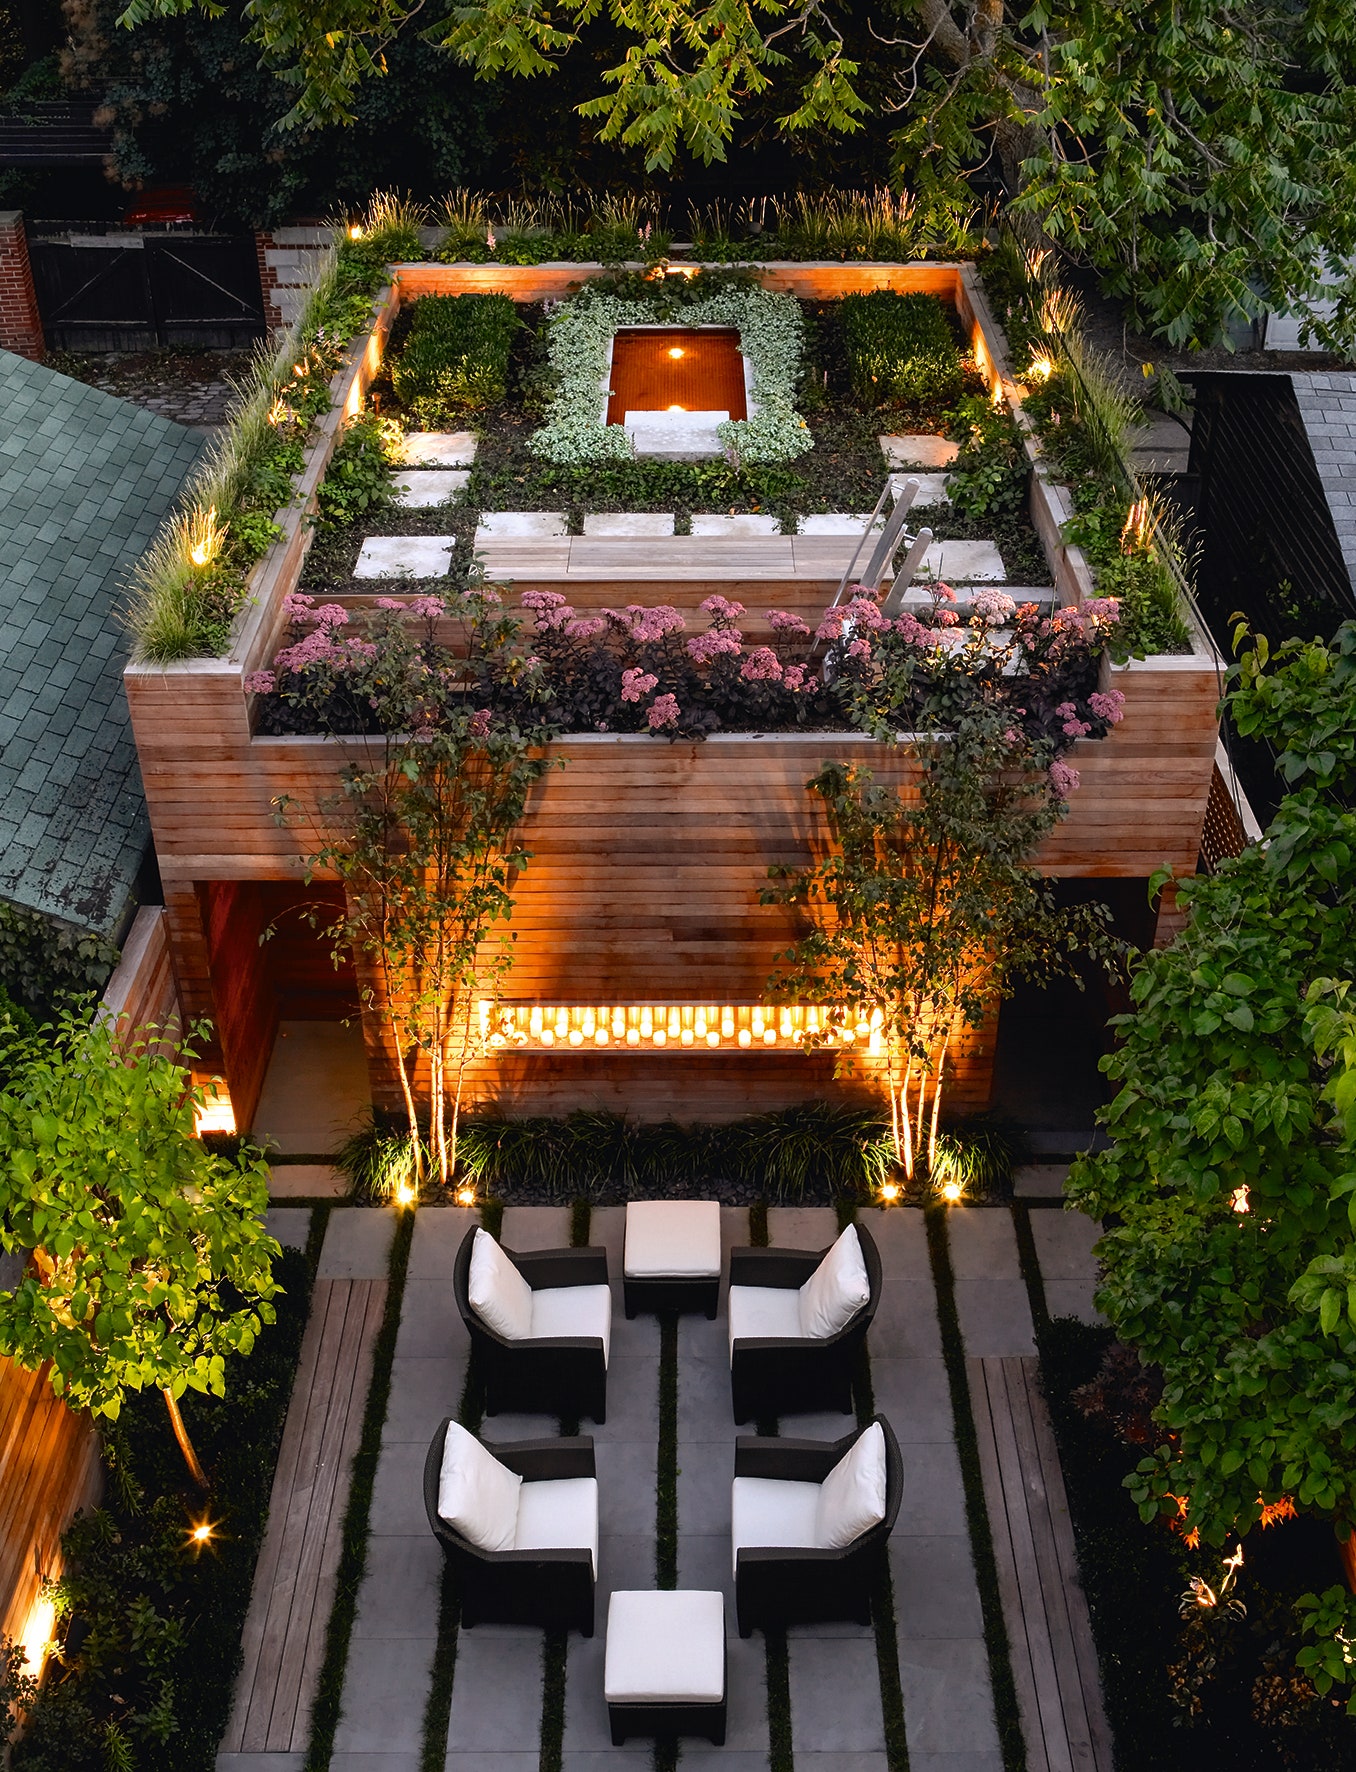 Terrace Garden Ideas